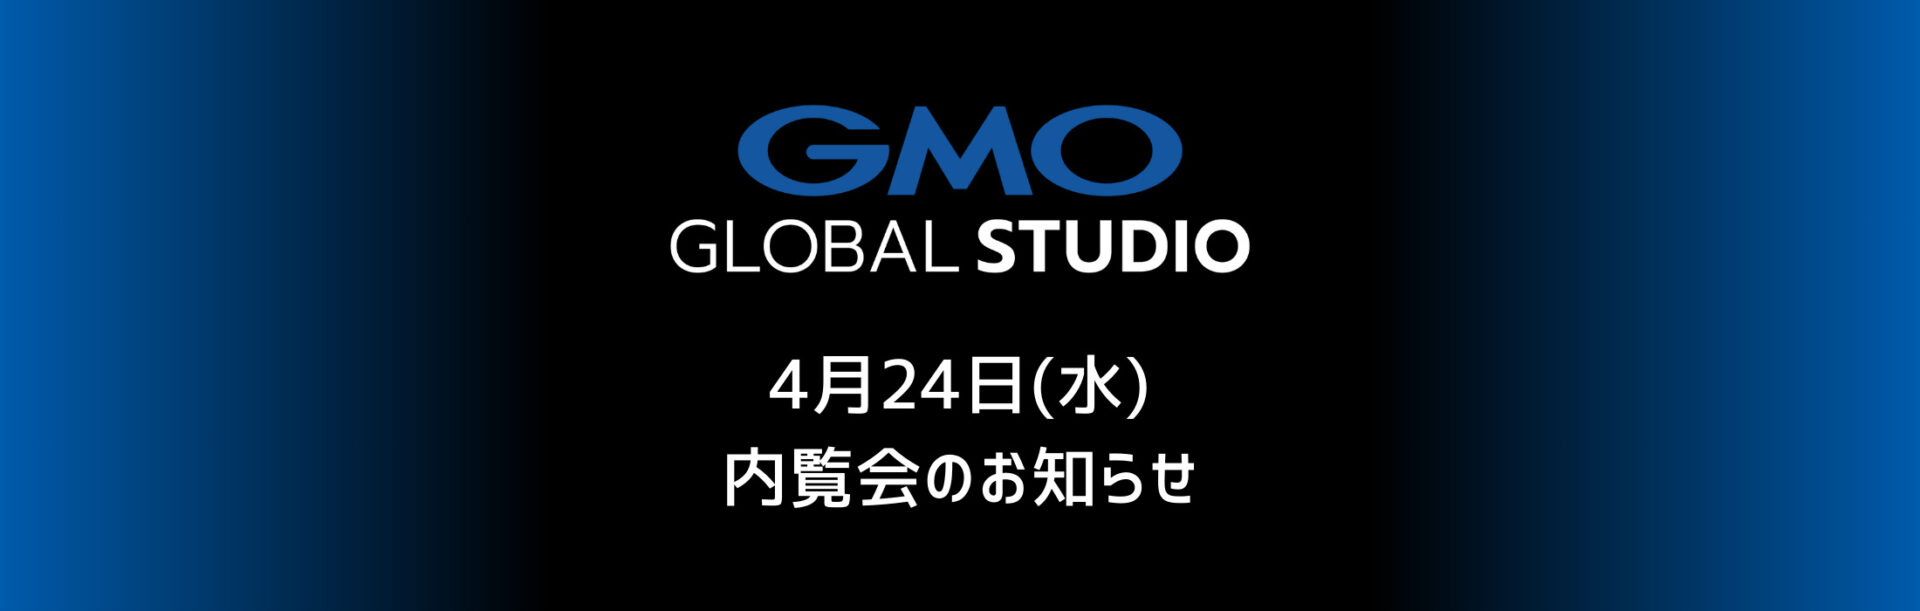 GMOグローバルスタジオ 内覧会 4月24日(水)